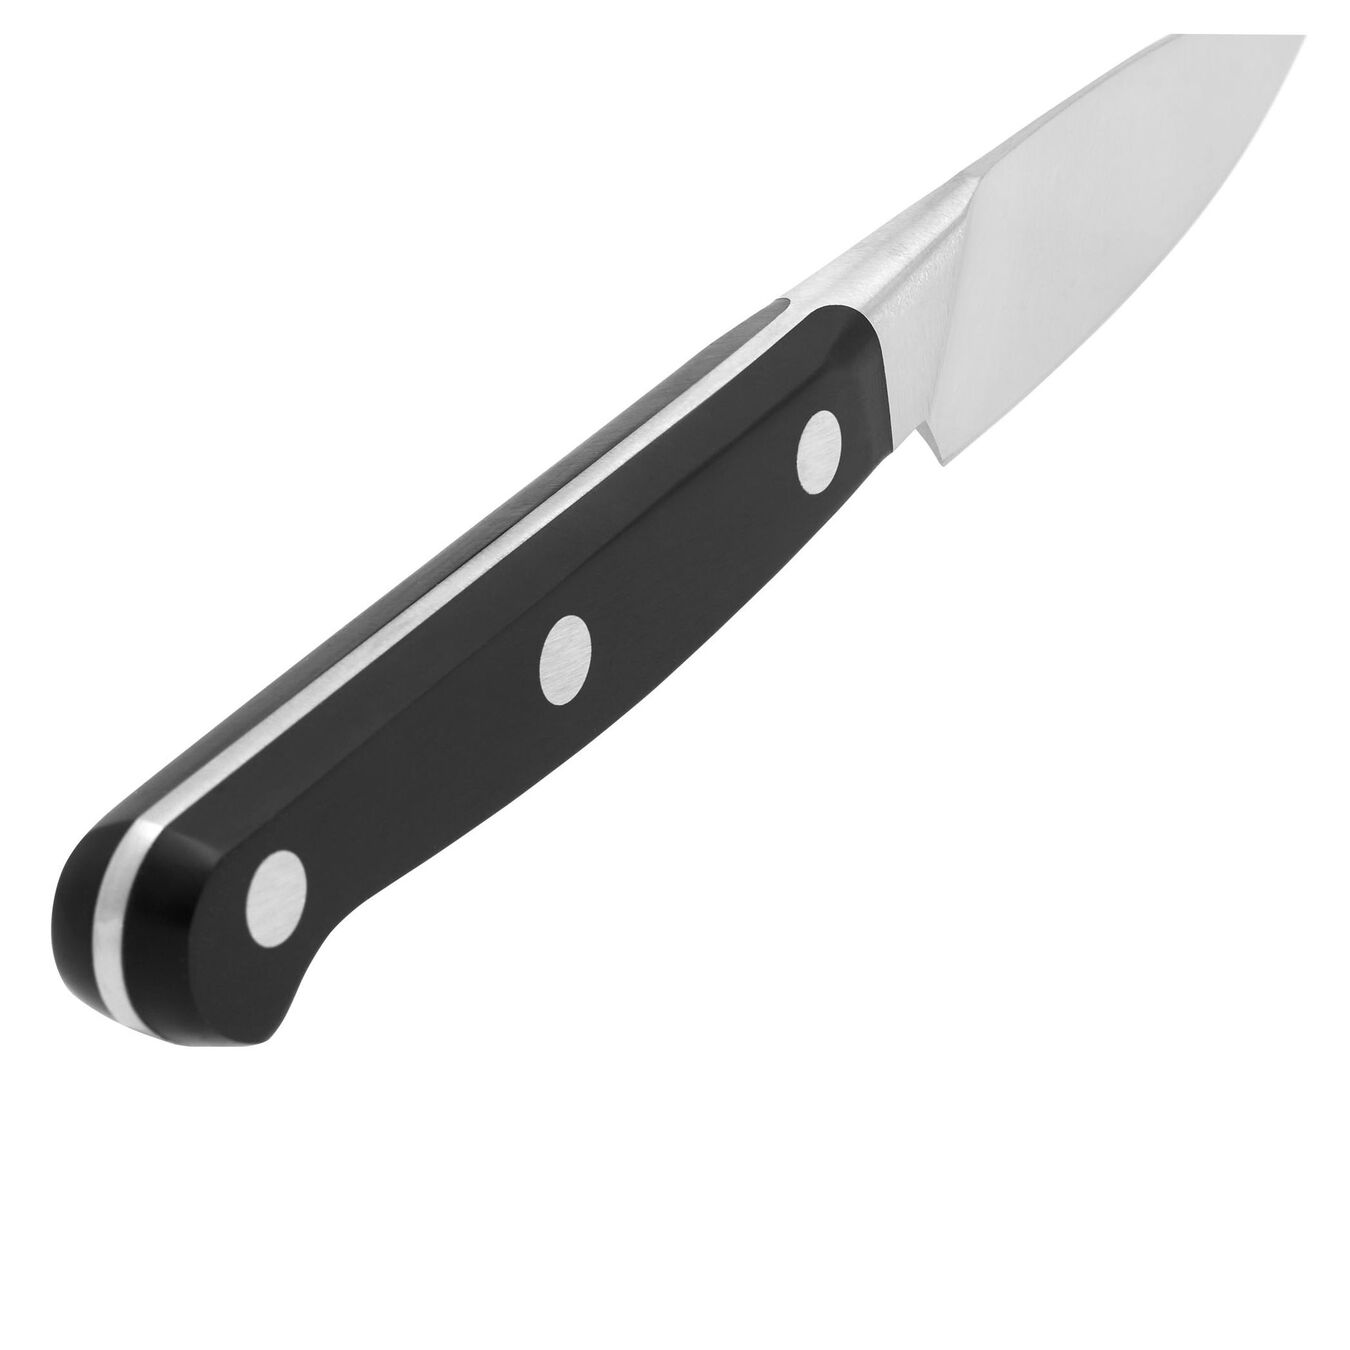 Soyma Doğrama Bıçağı | Özel Formül Çelik | 8 cm,,large 6